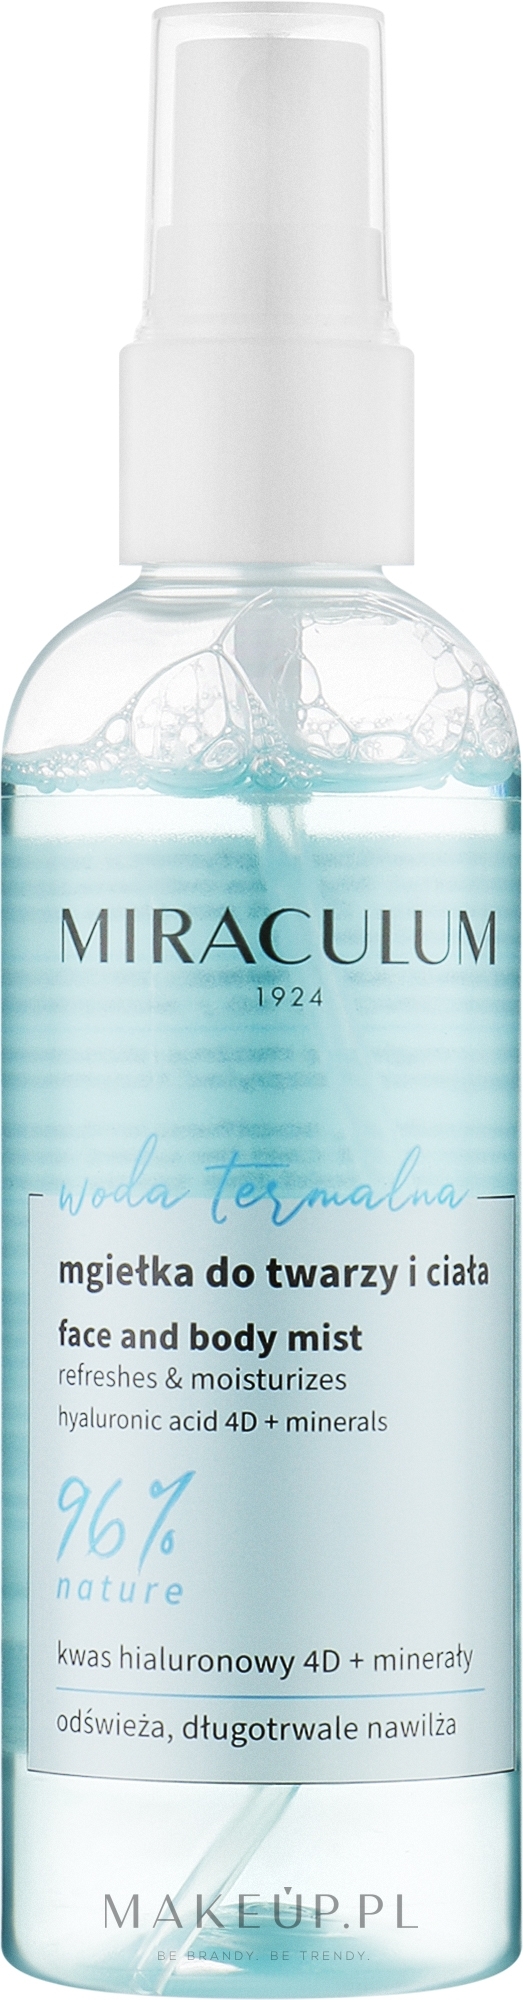 Mgiełka do twarzy i ciała - Miraculum Woda Termalna — Zdjęcie 100 ml